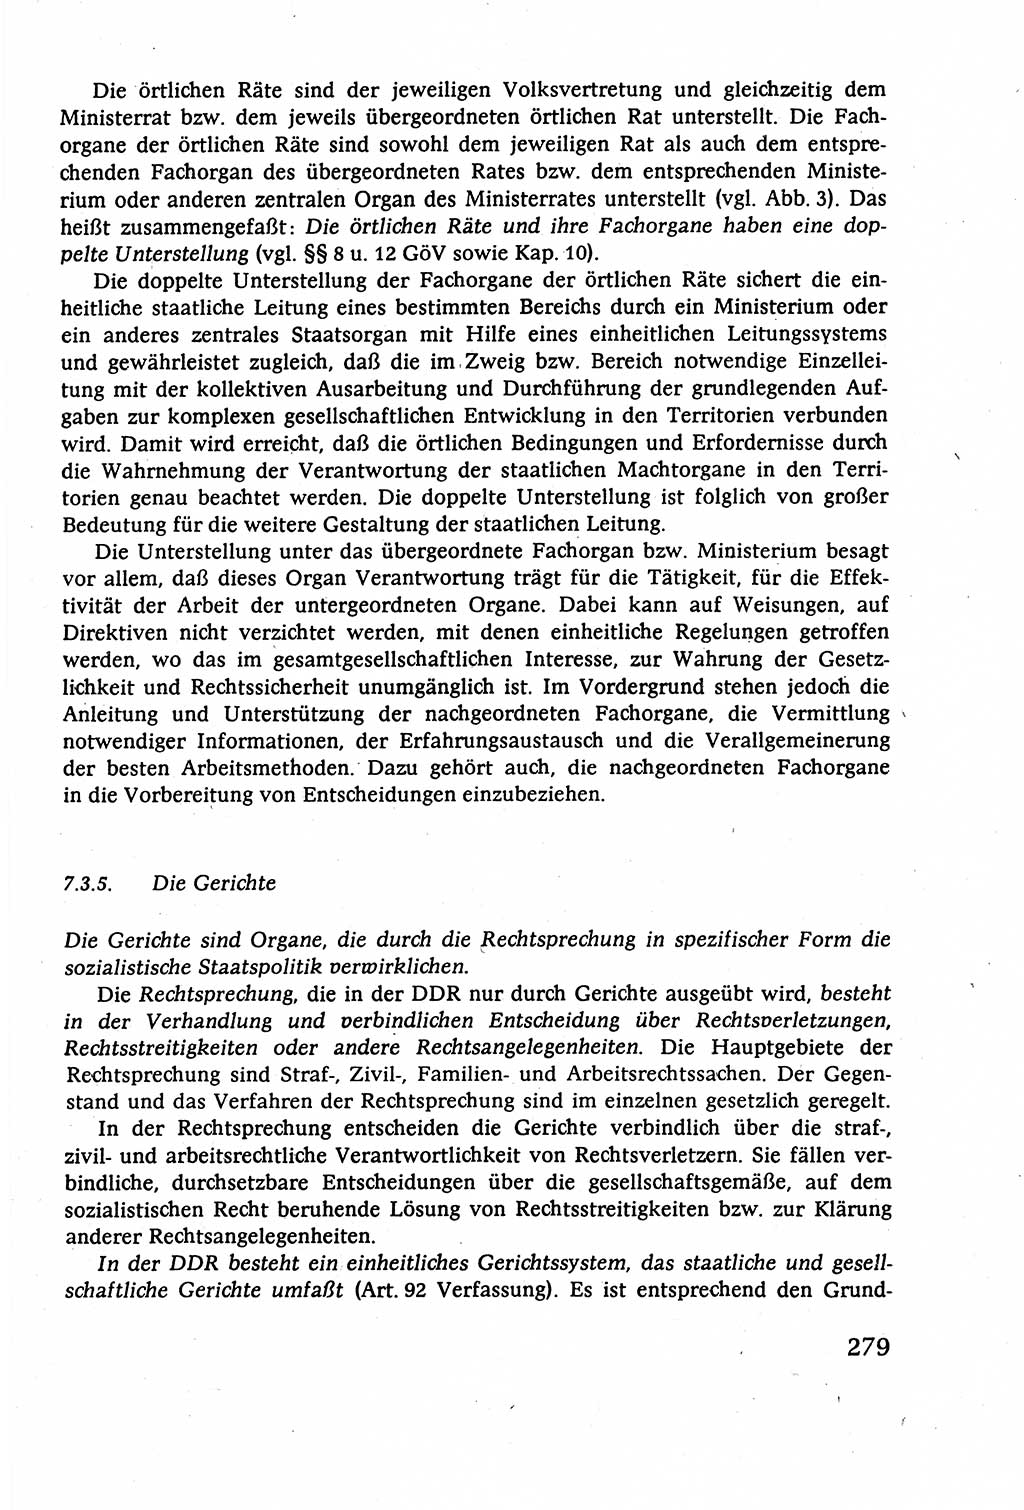 Staatsrecht der DDR (Deutsche Demokratische Republik), Lehrbuch 1977, Seite 279 (St.-R. DDR Lb. 1977, S. 279)